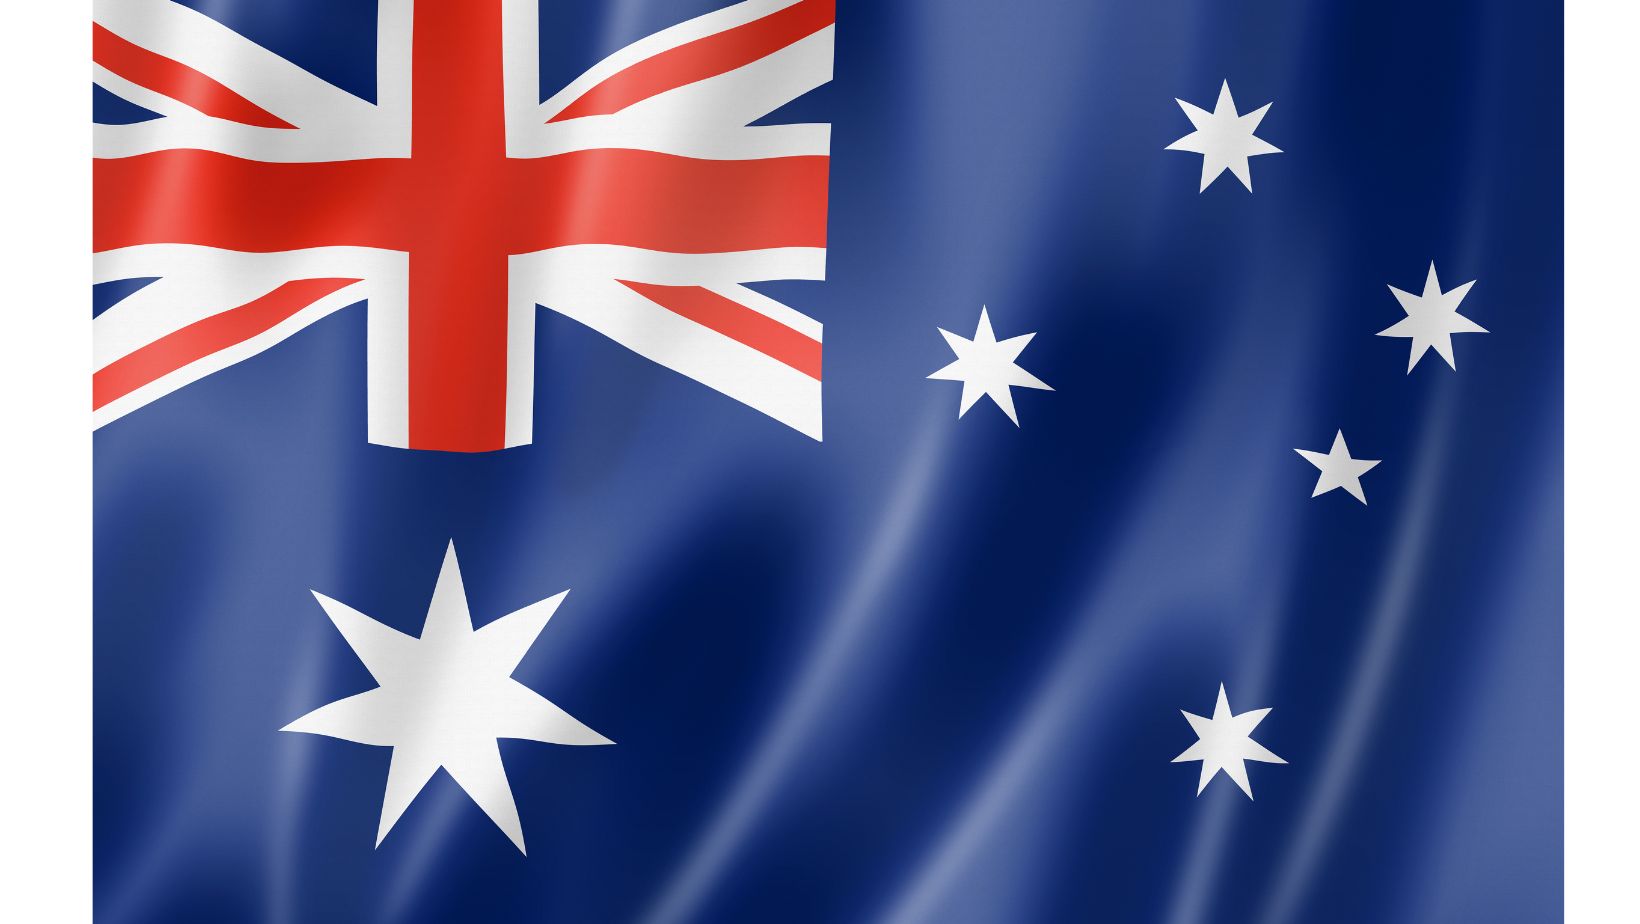 Quốc kỳ Úc: ngôi sao trắng và sọc chéo đỏ trắng trên nền xanh lam